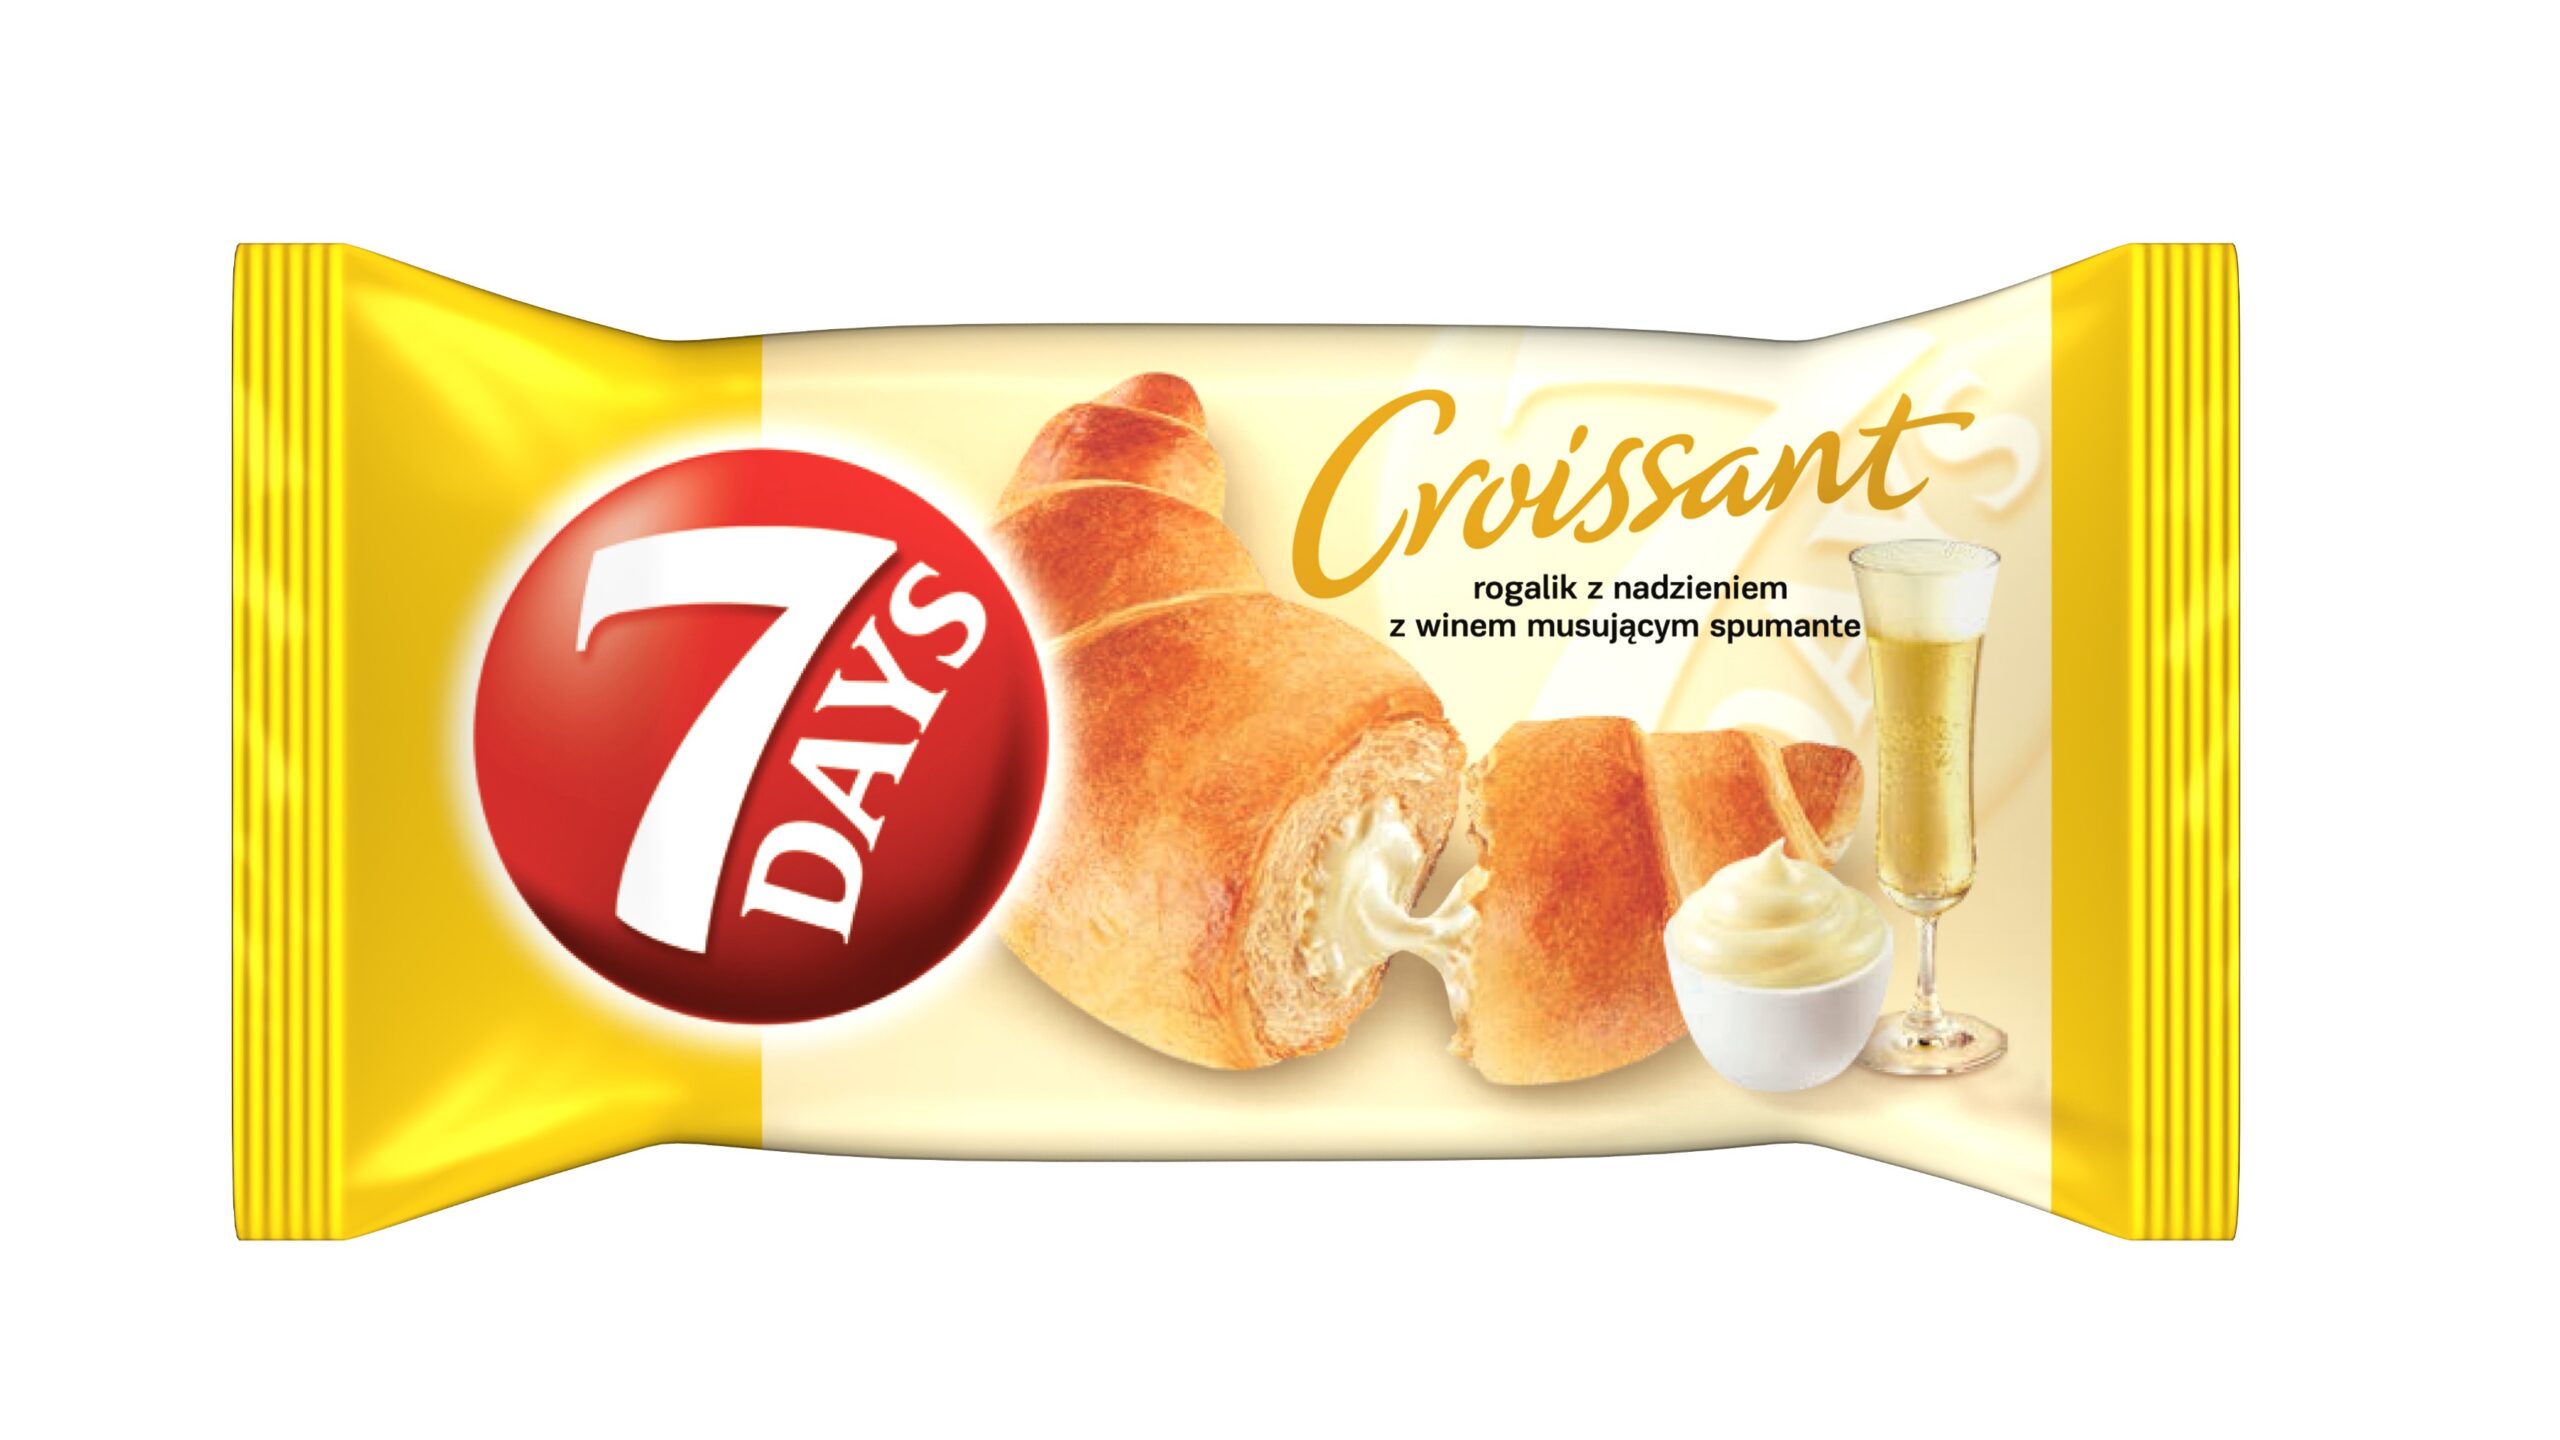 7 Days croissant z nadzieniem szampańskim 60g